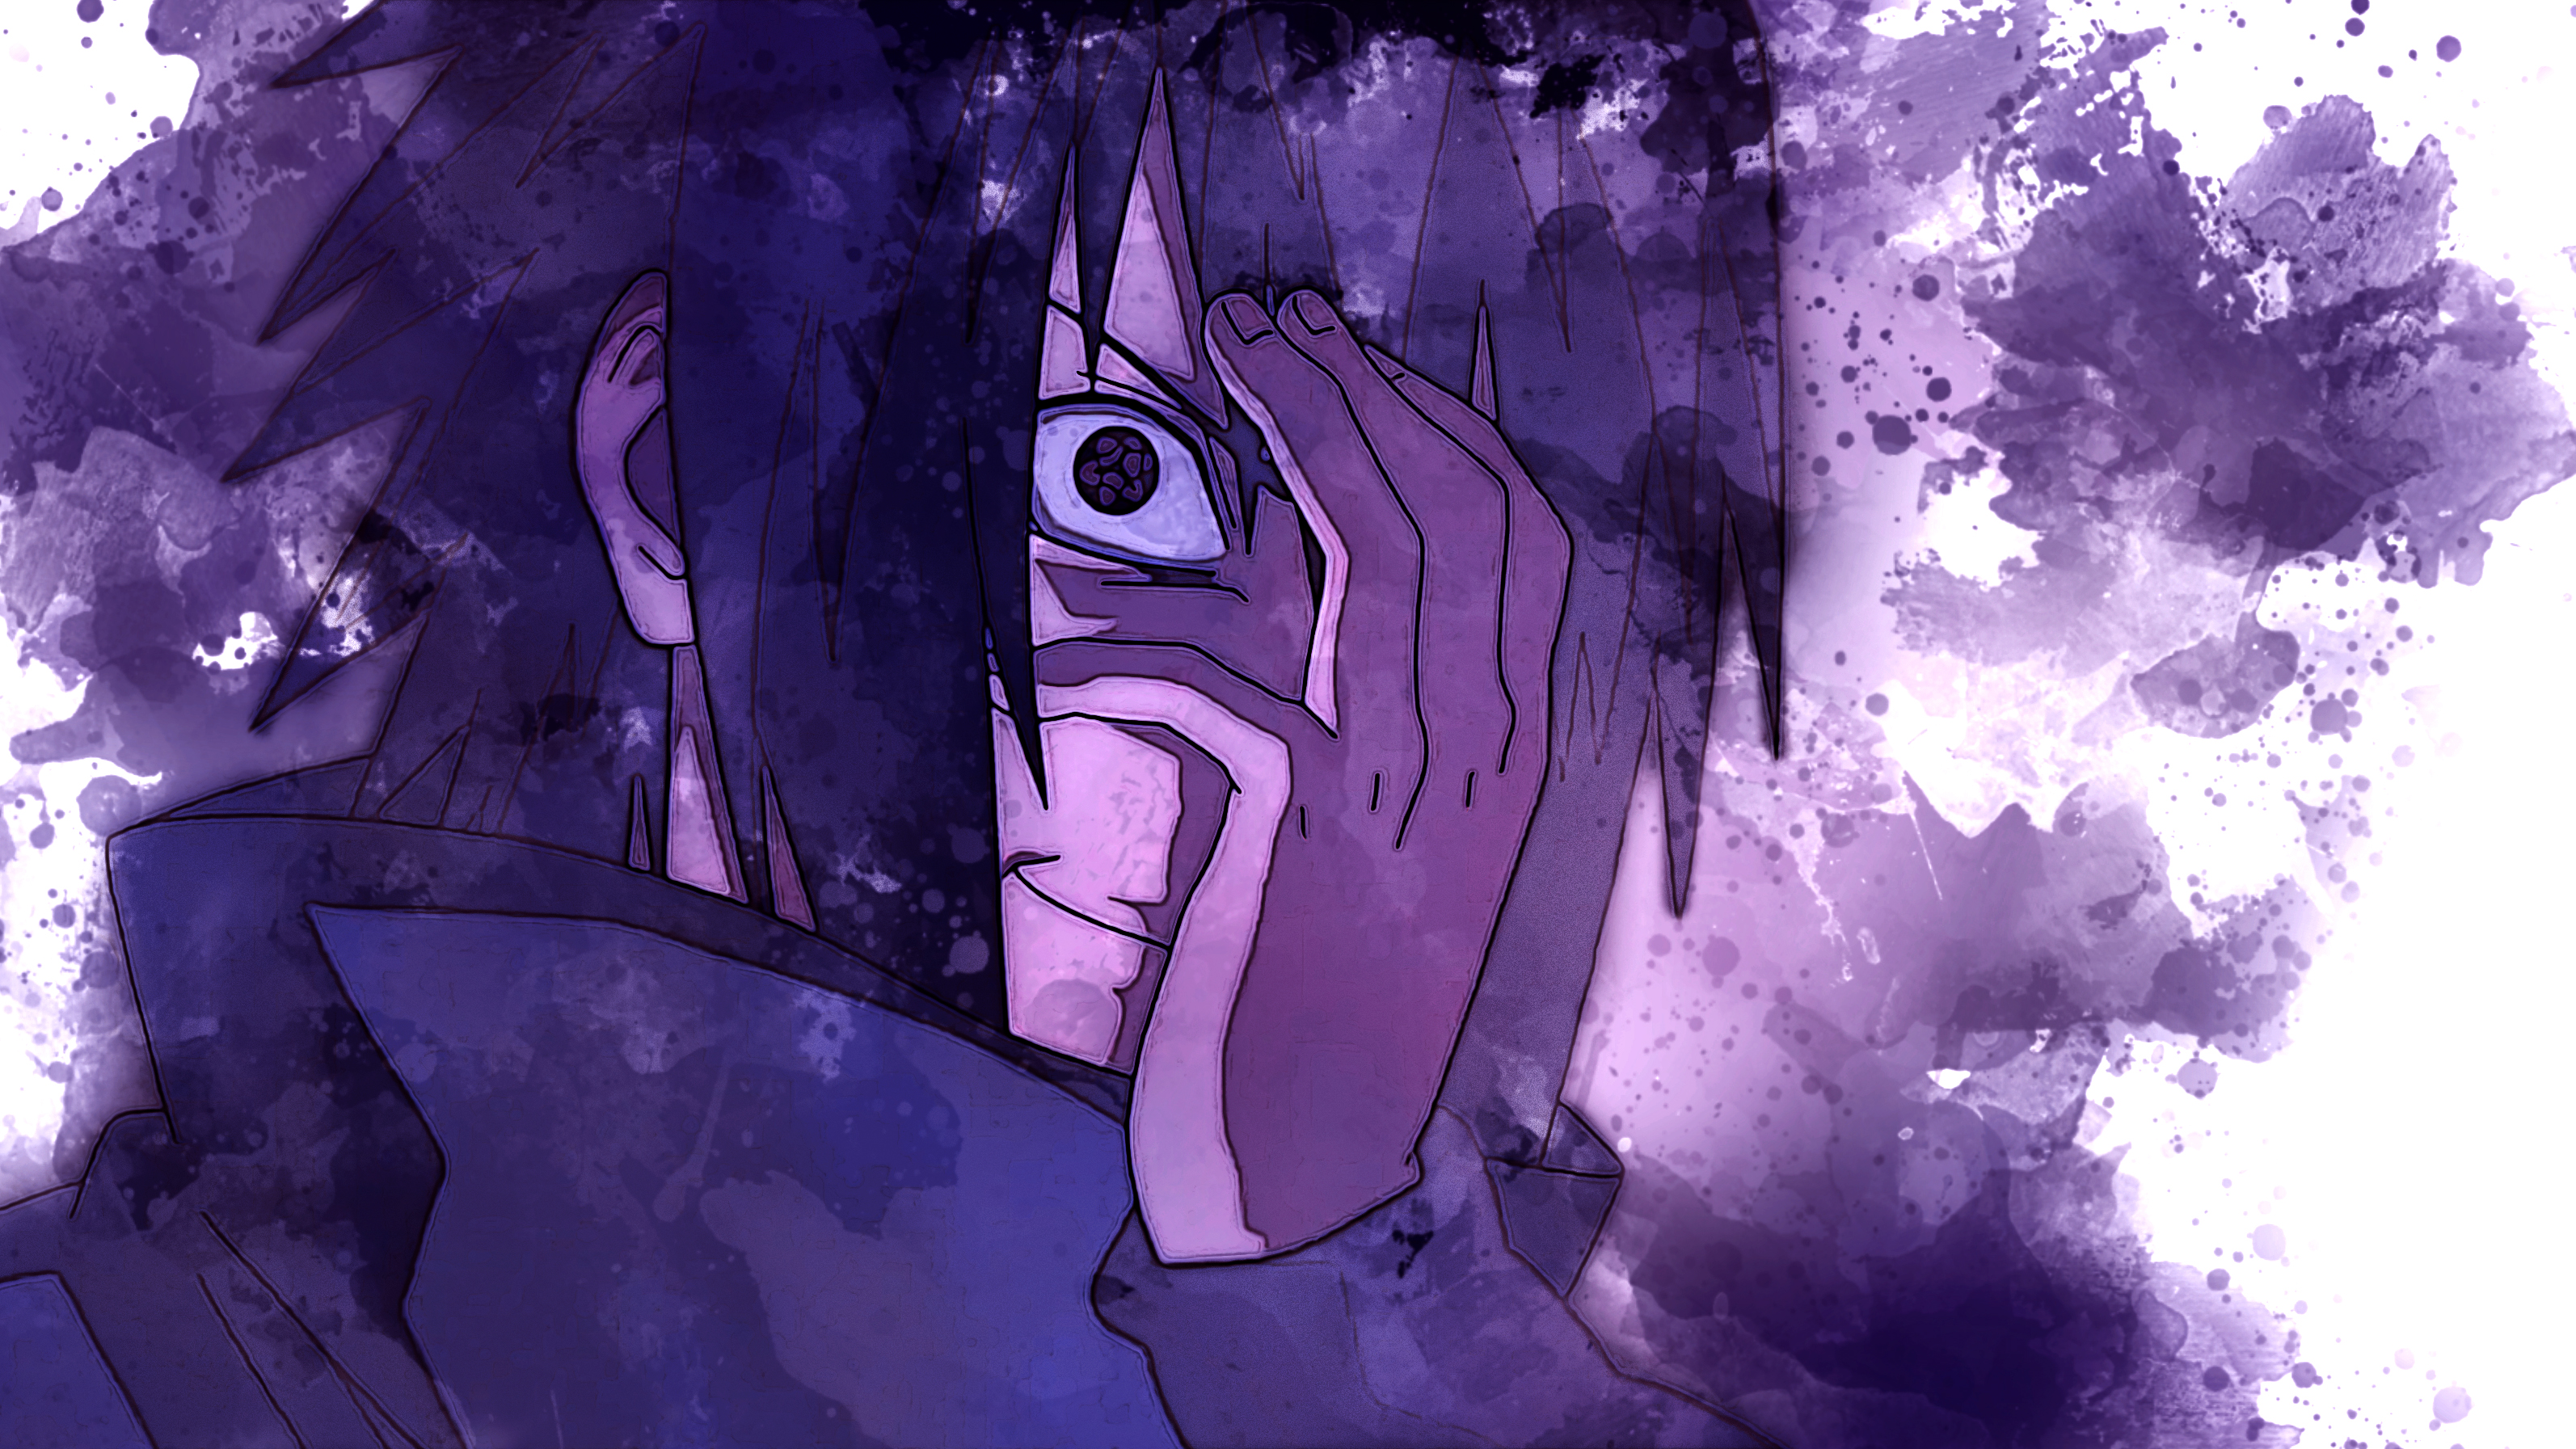 sasuke sharingan wallpaper,lila,violett,cg kunstwerk,illustration,grafikdesign